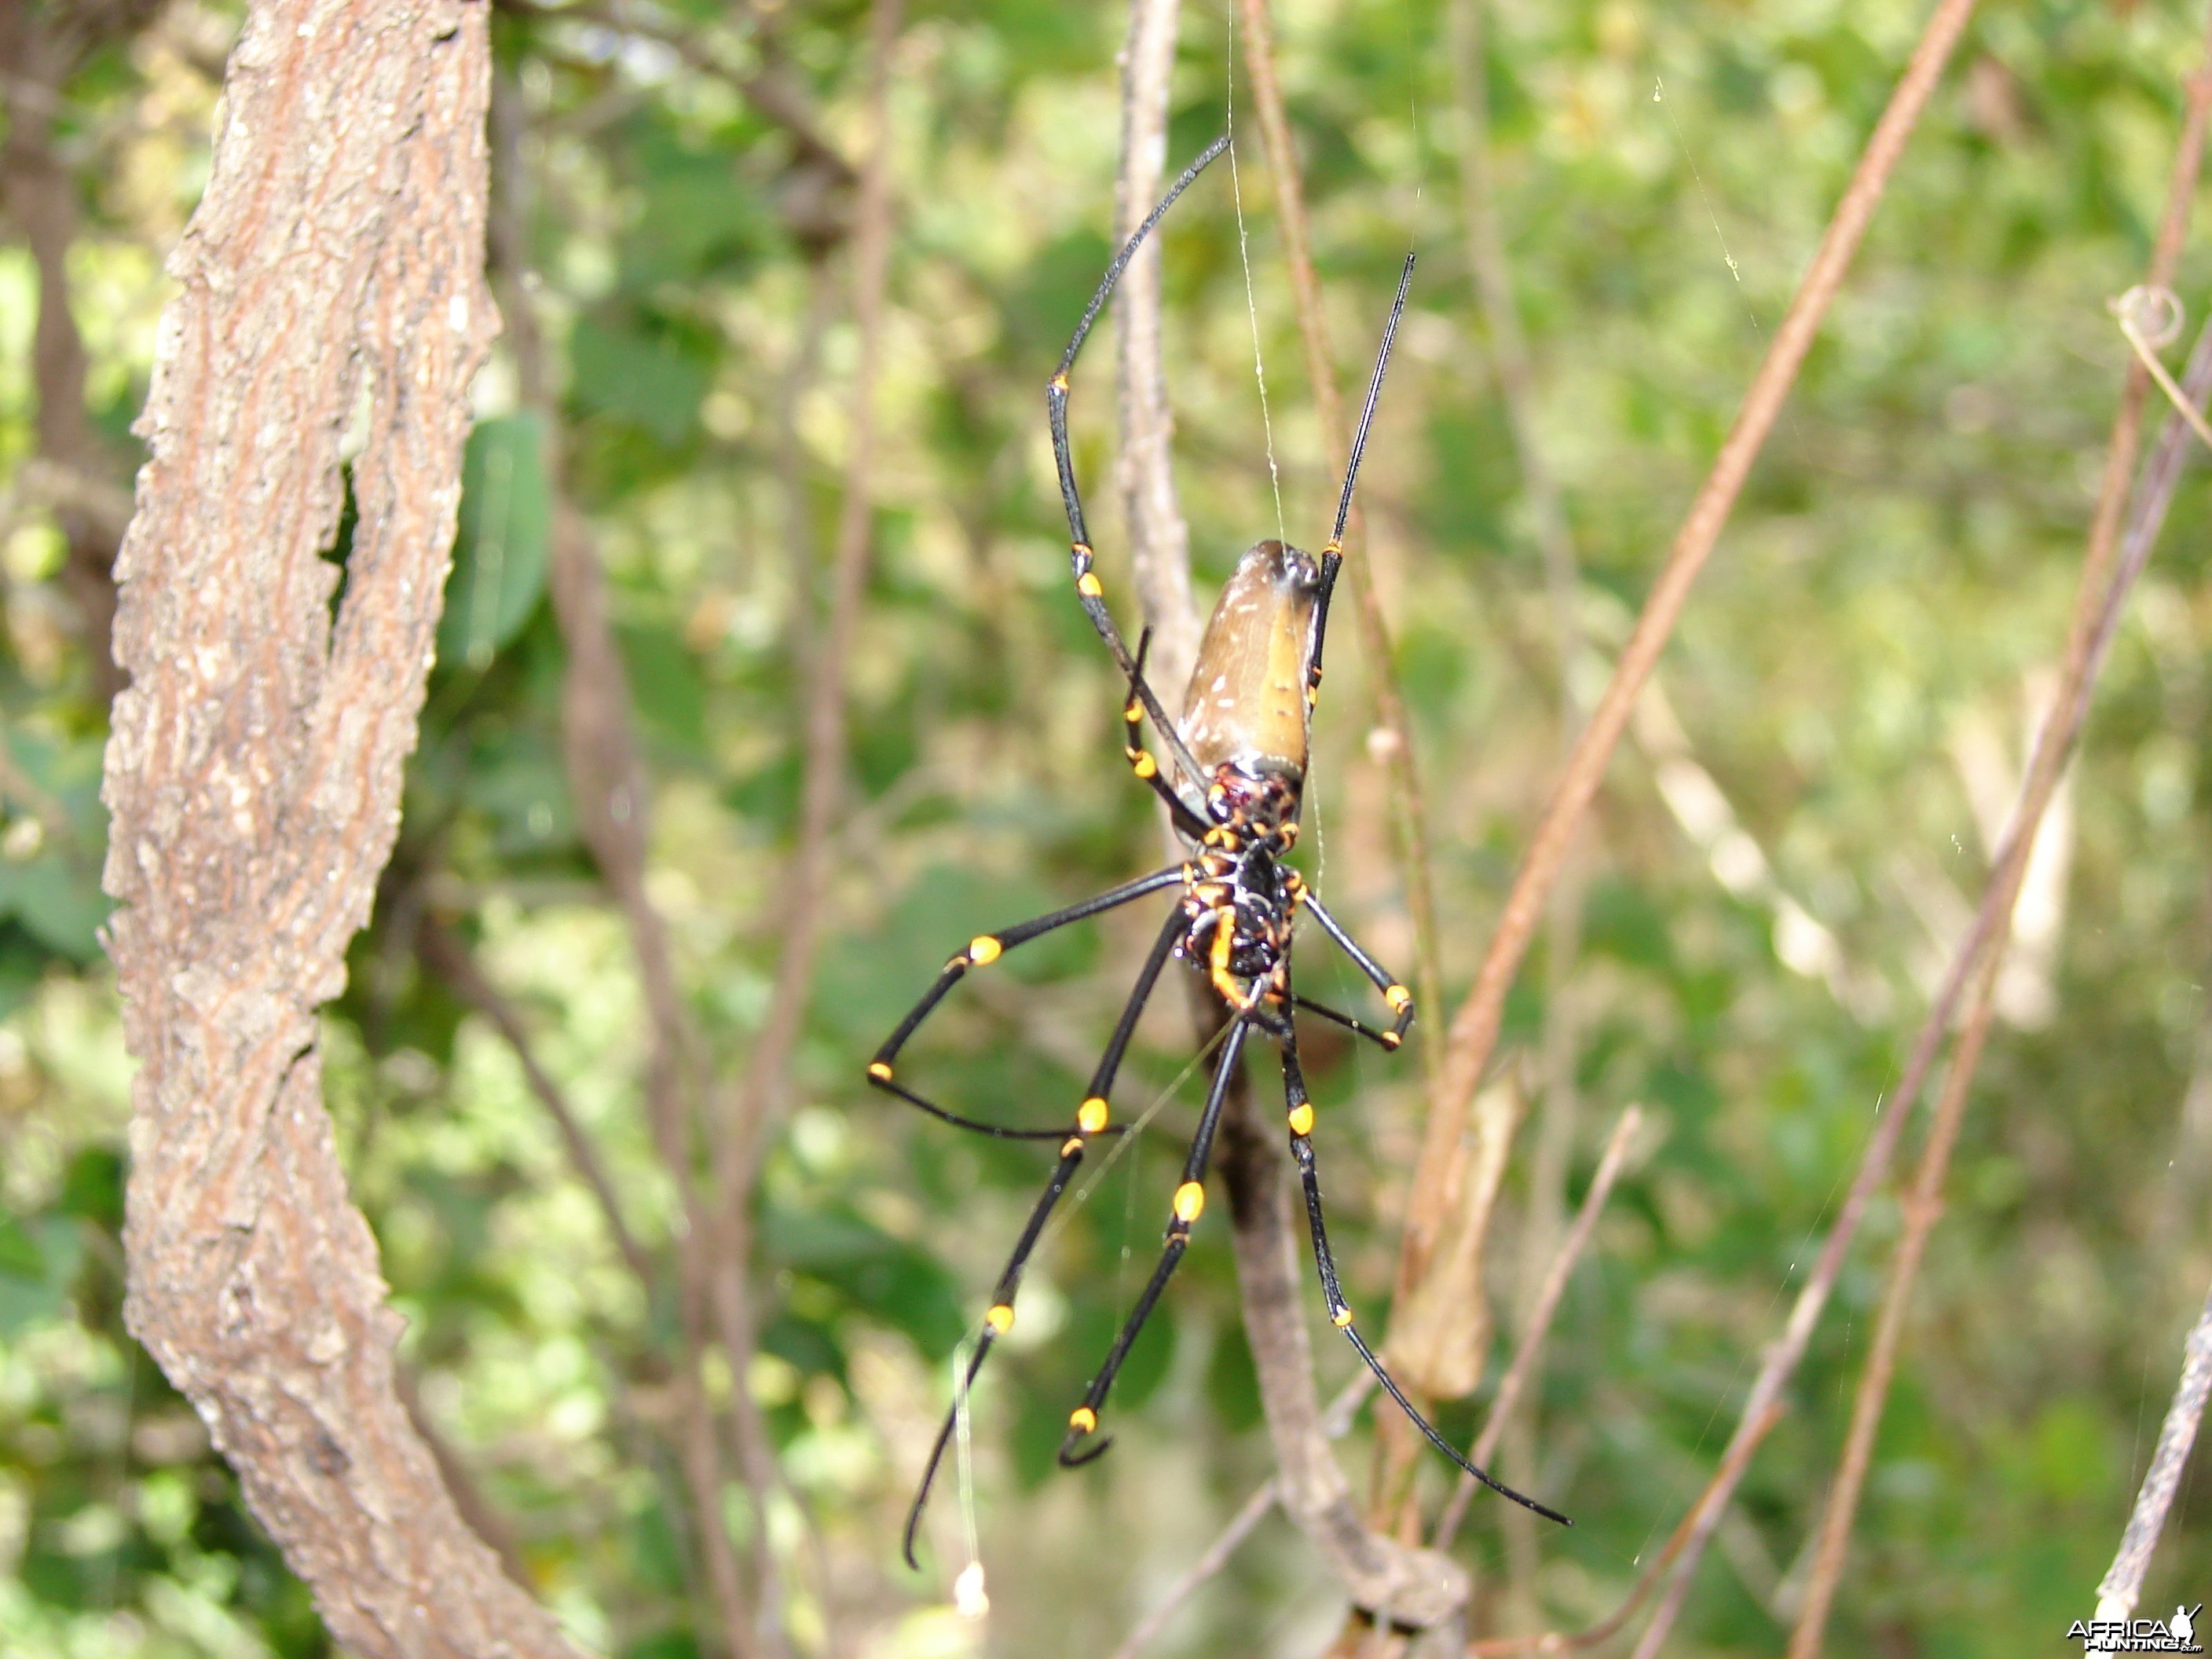 Spider Arnhem Land Australia